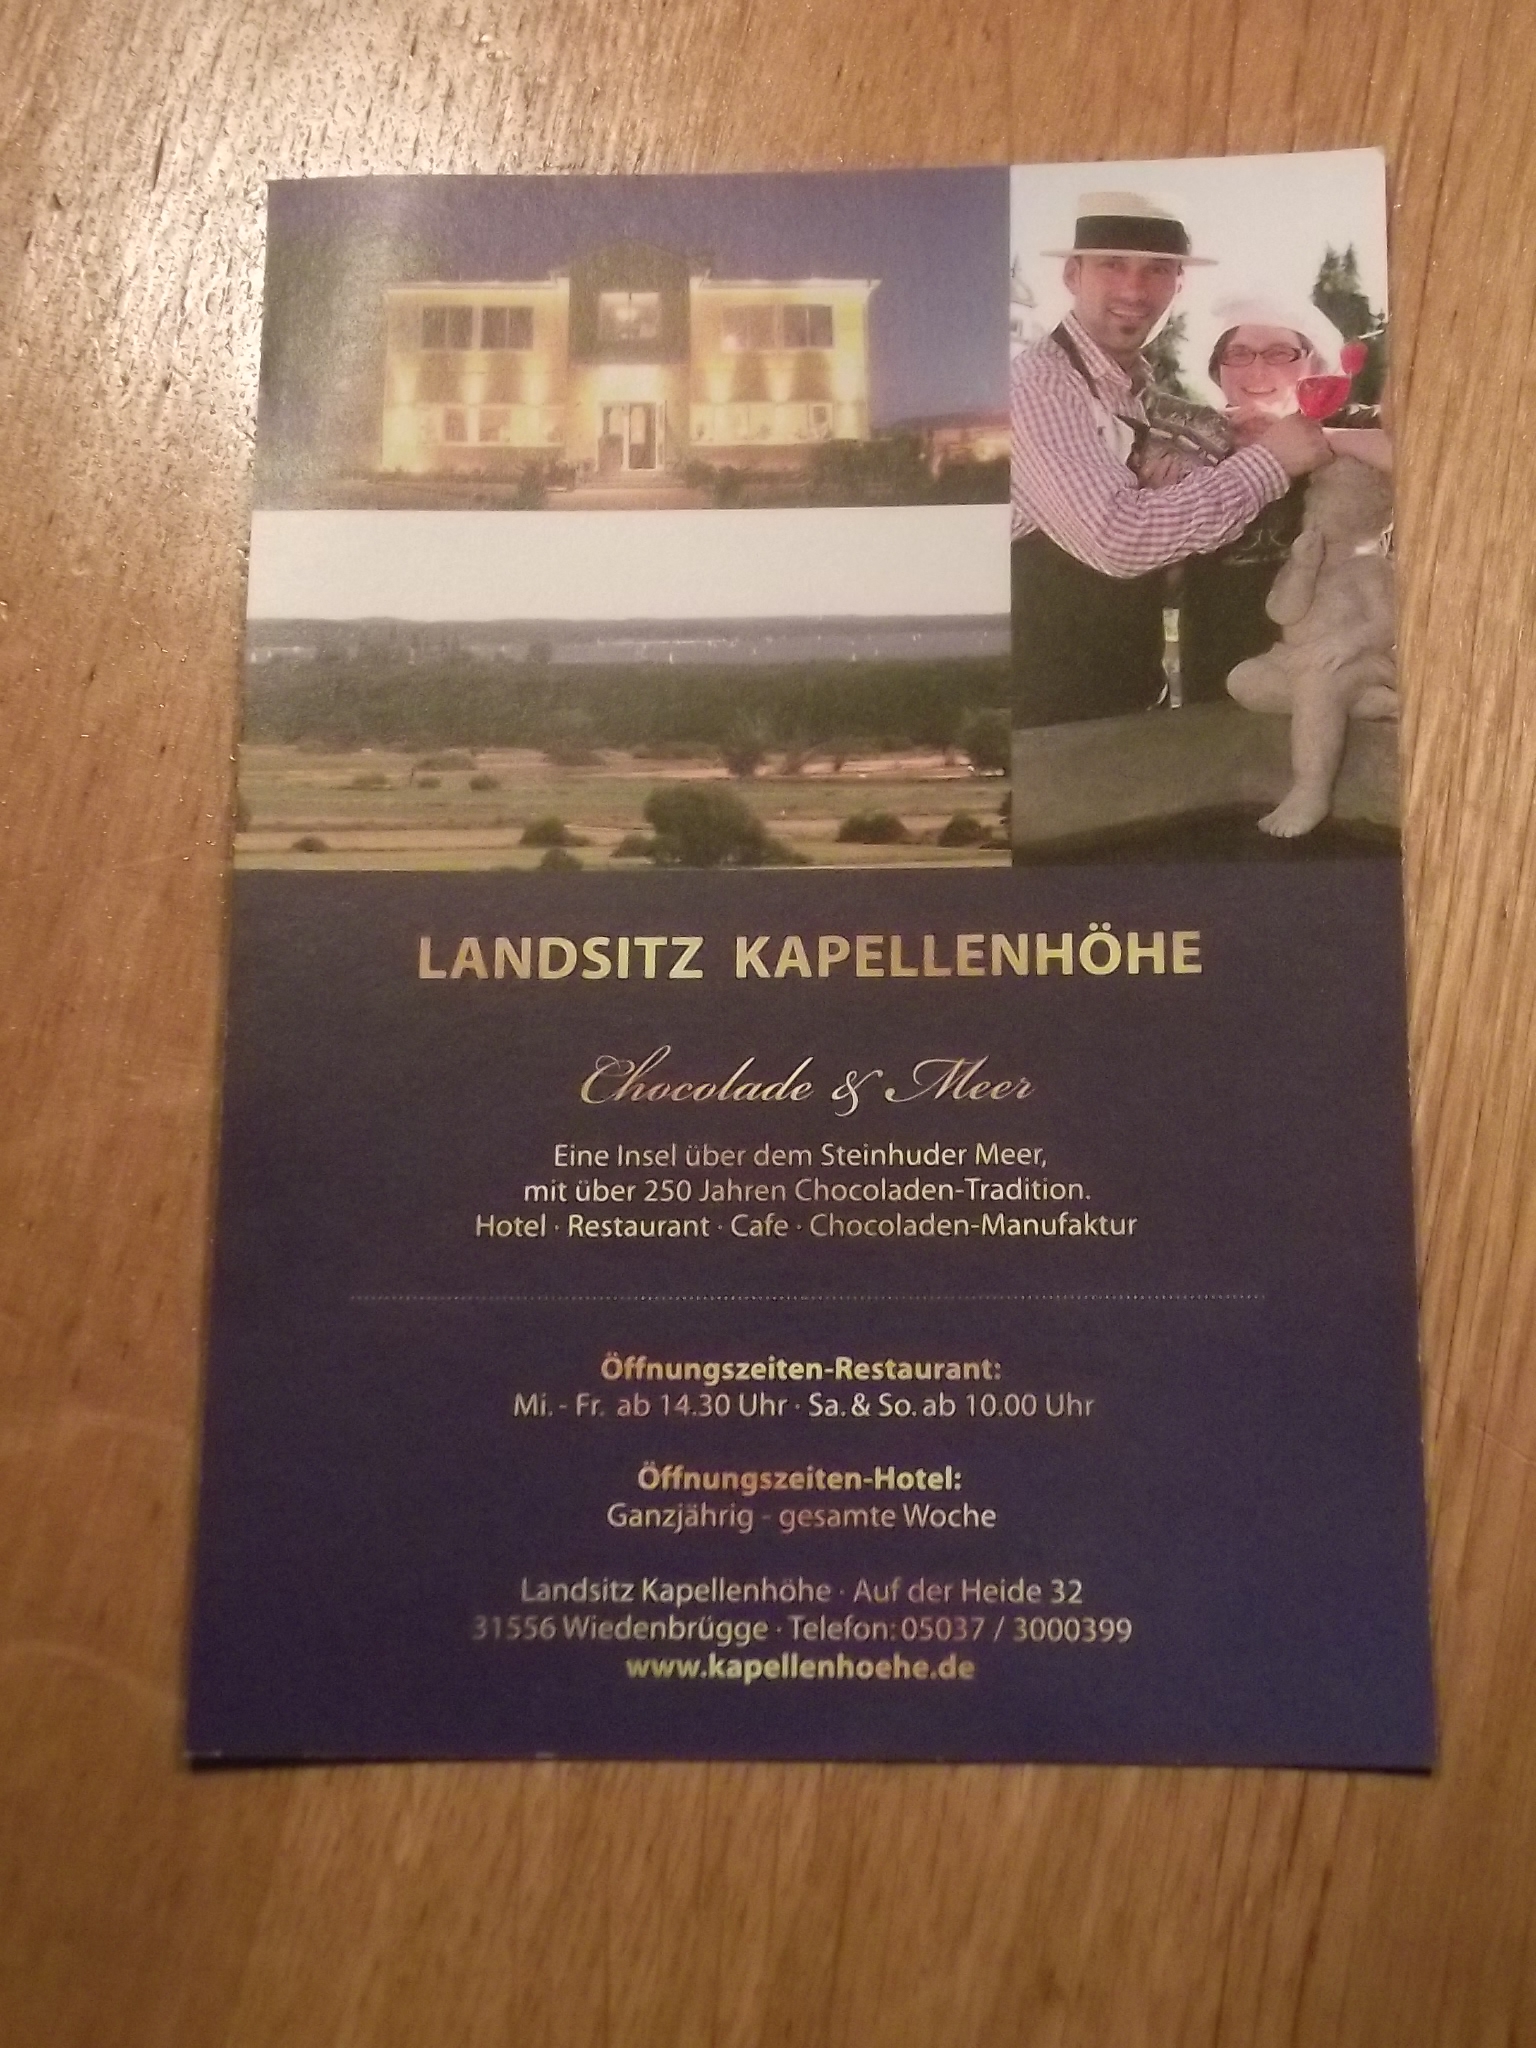 Flyer vom Landsitz Kapellenhöhe in Wiedenbrügge